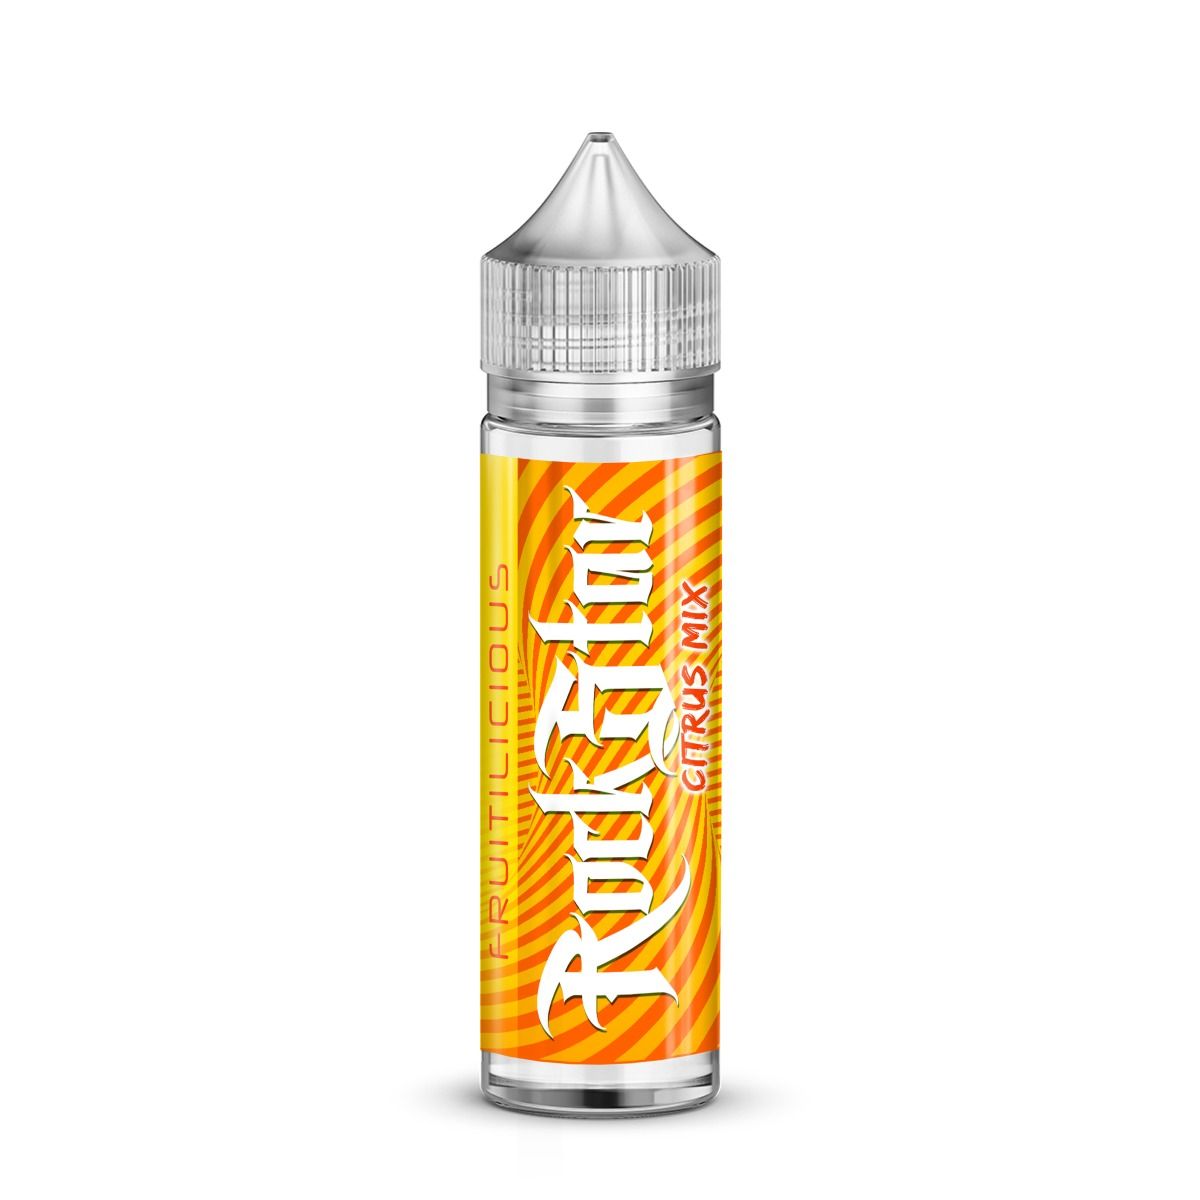 Citrus Mix E-liquid by Rockstar 50ml Short Fill